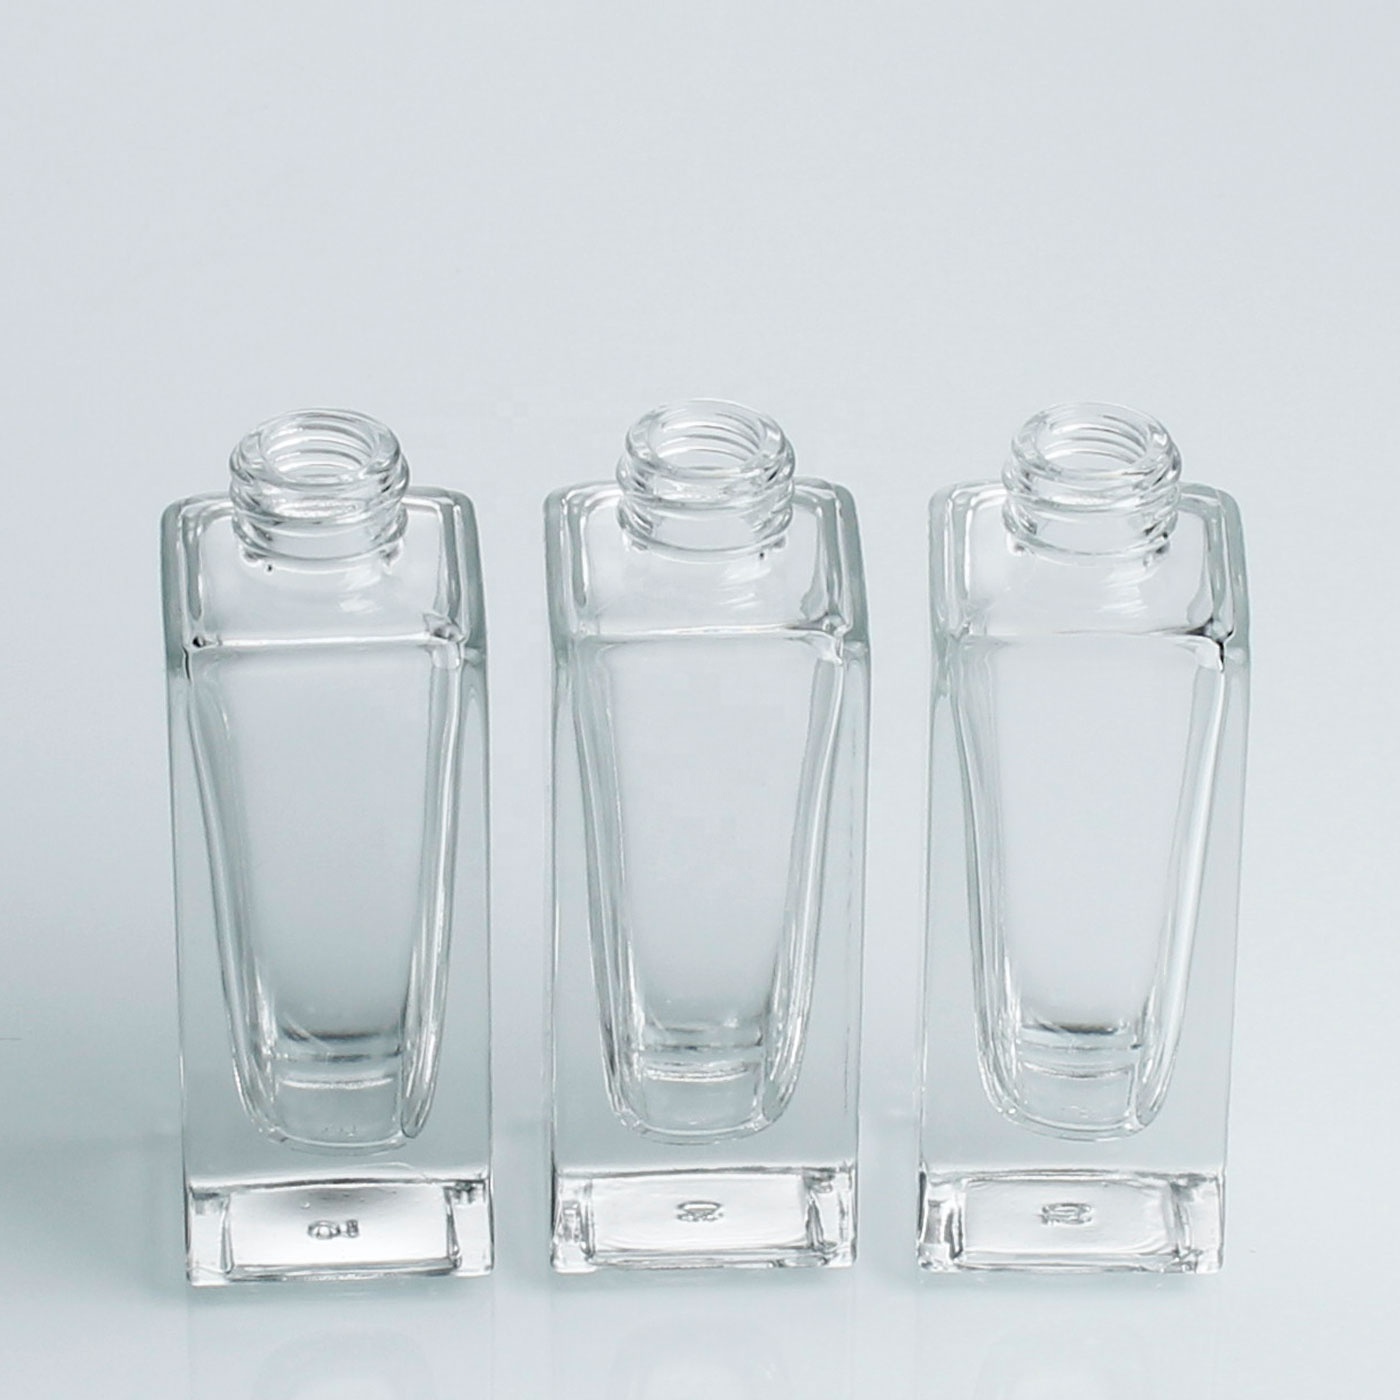 China supplier 10ml mini Glass Bottle Liquid Foundation Bottles Glass Perfume Bottles 